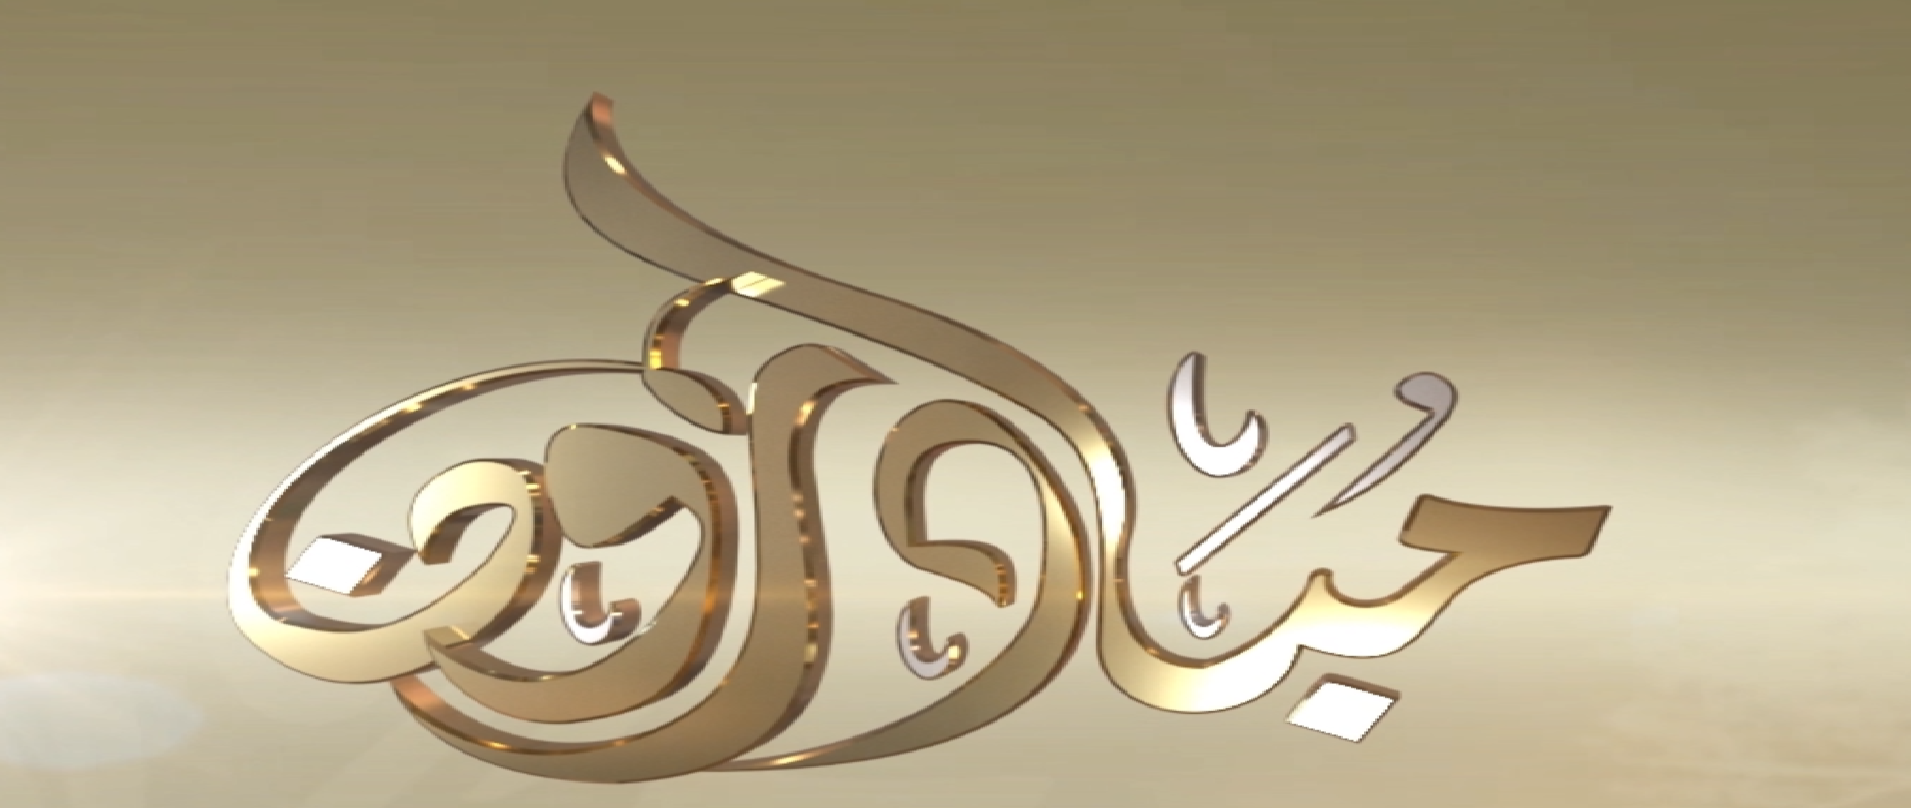 شاهد : برنامج مبادرون من قناه سبأ بتاريخ 8/رمضان/1441
